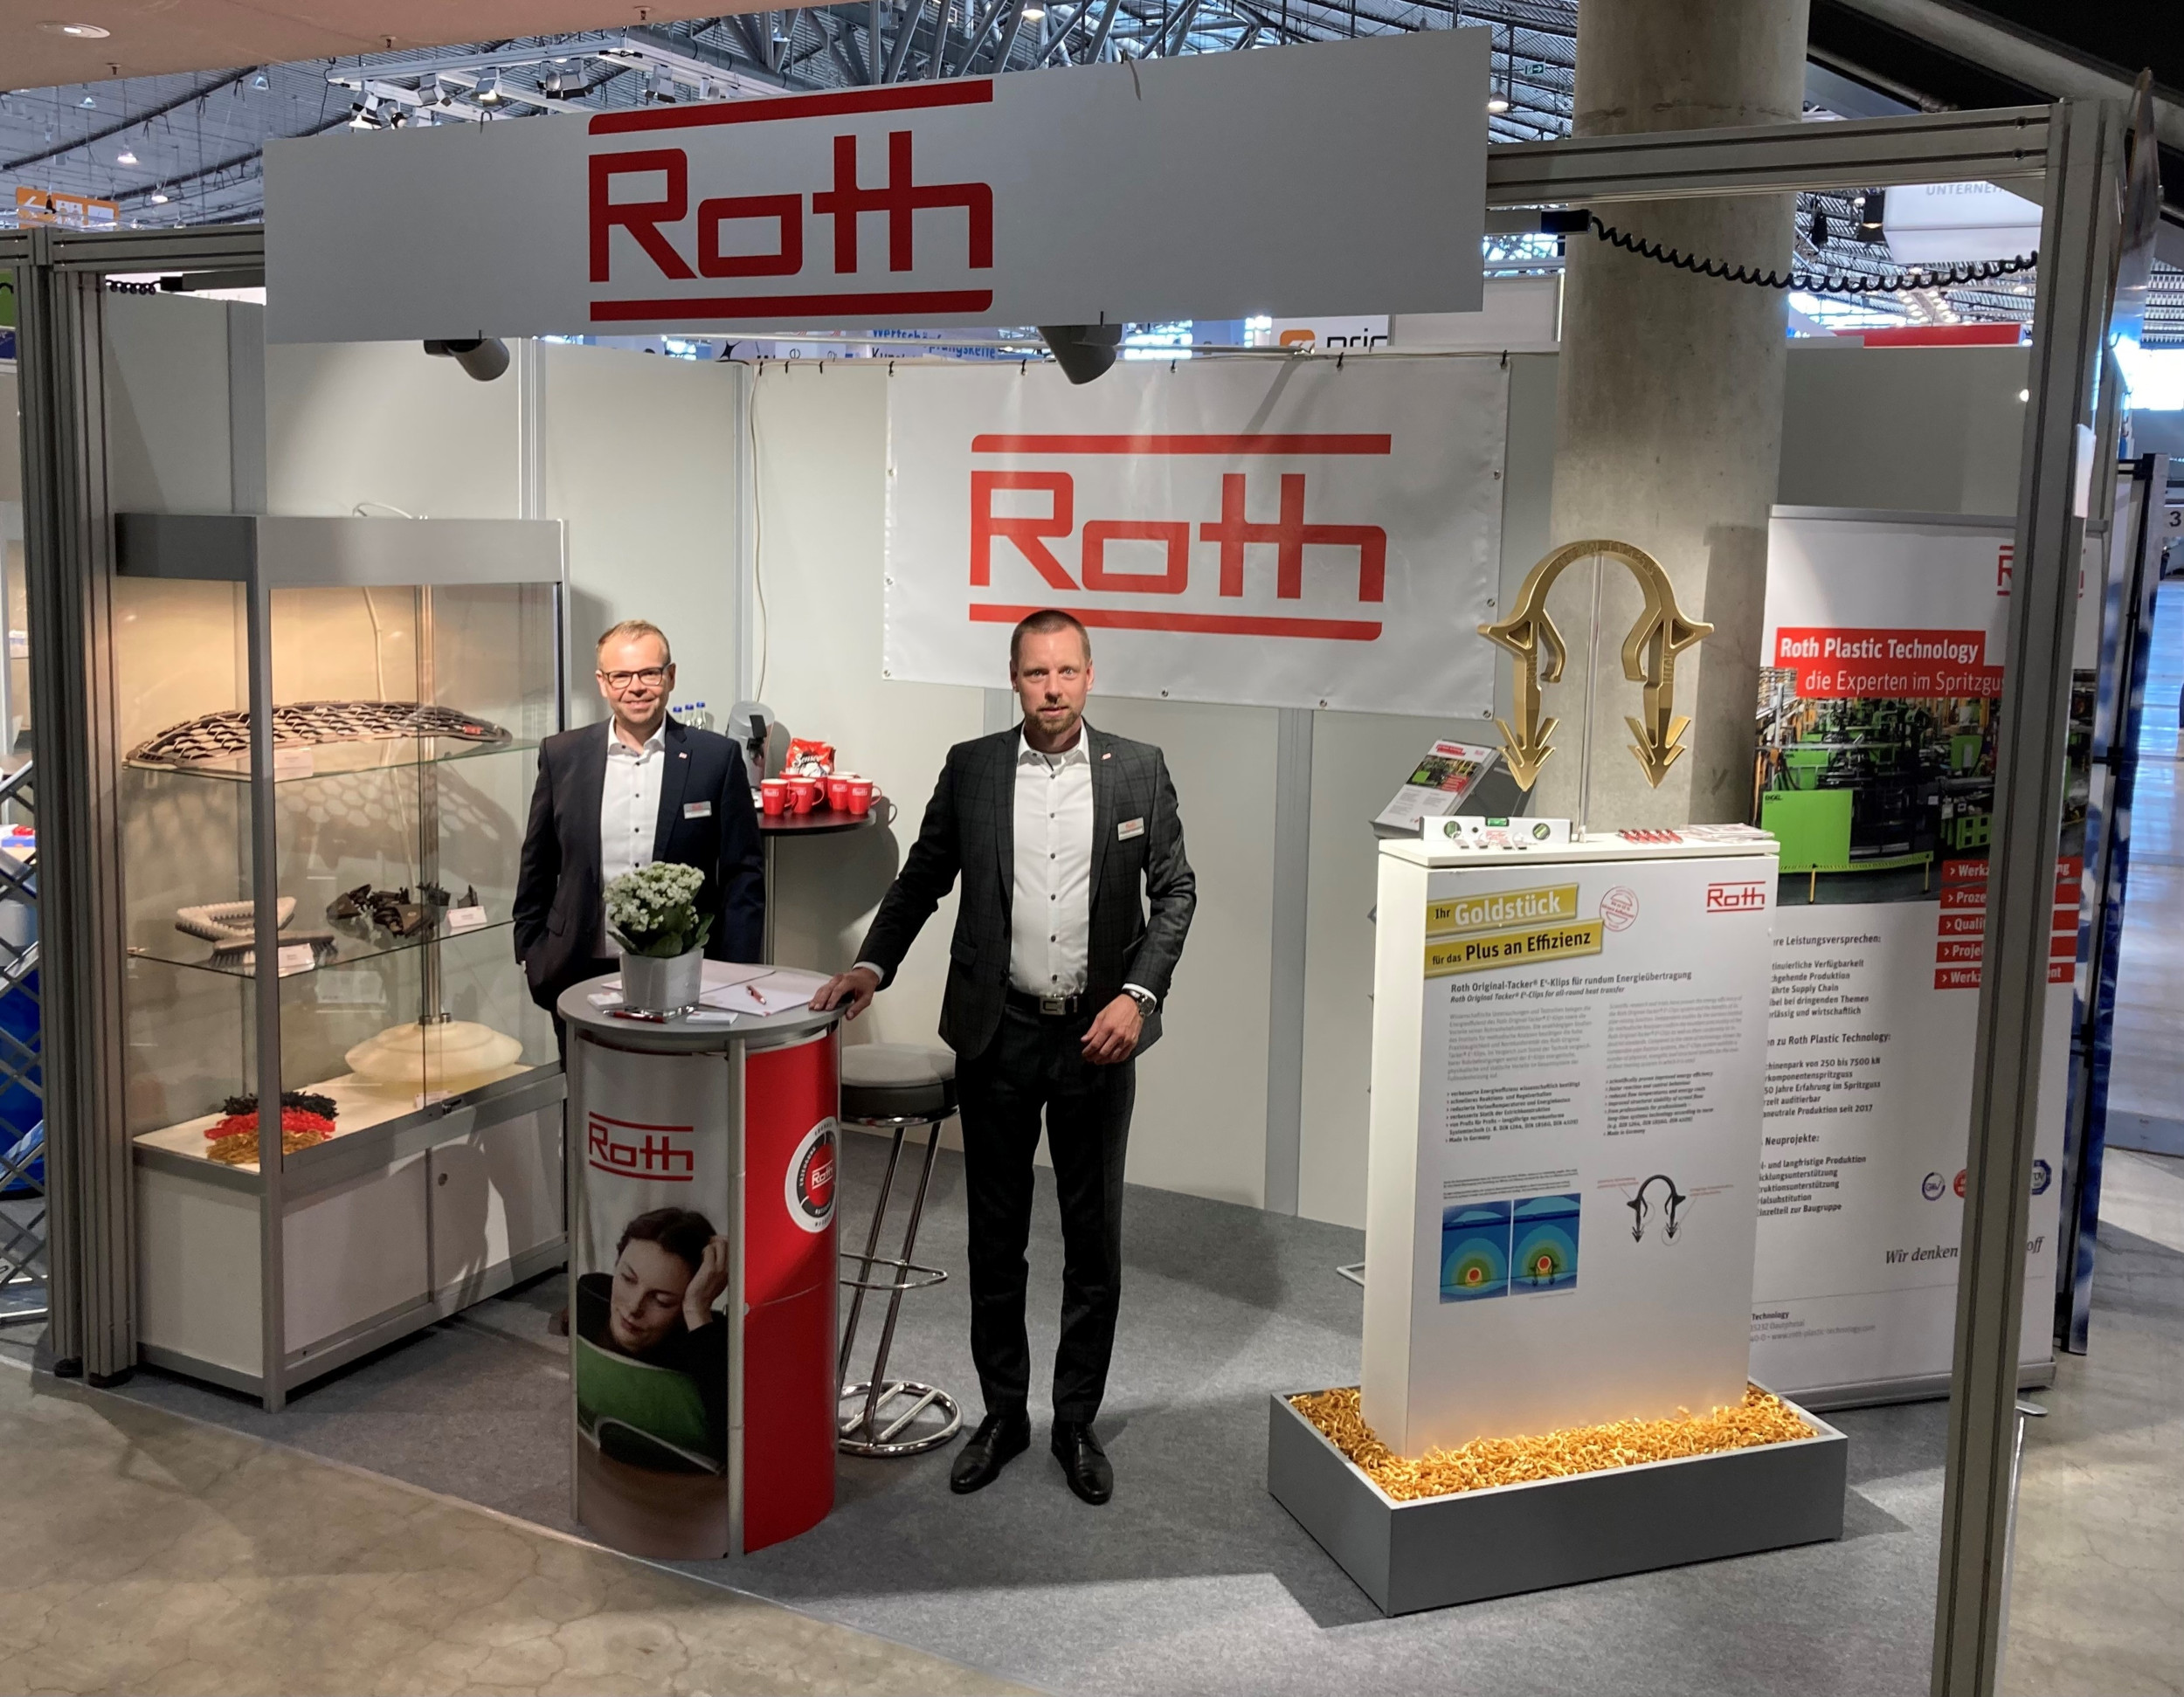 Als Gastaussteller von Oni zeigen Sebastian Herrmann (r) und Jörg Csellner von Roth Plastic Technology auf der Fakuma intelligente Produkte und Services für mehr Nachhaltigkeit und Energieeffizienz.